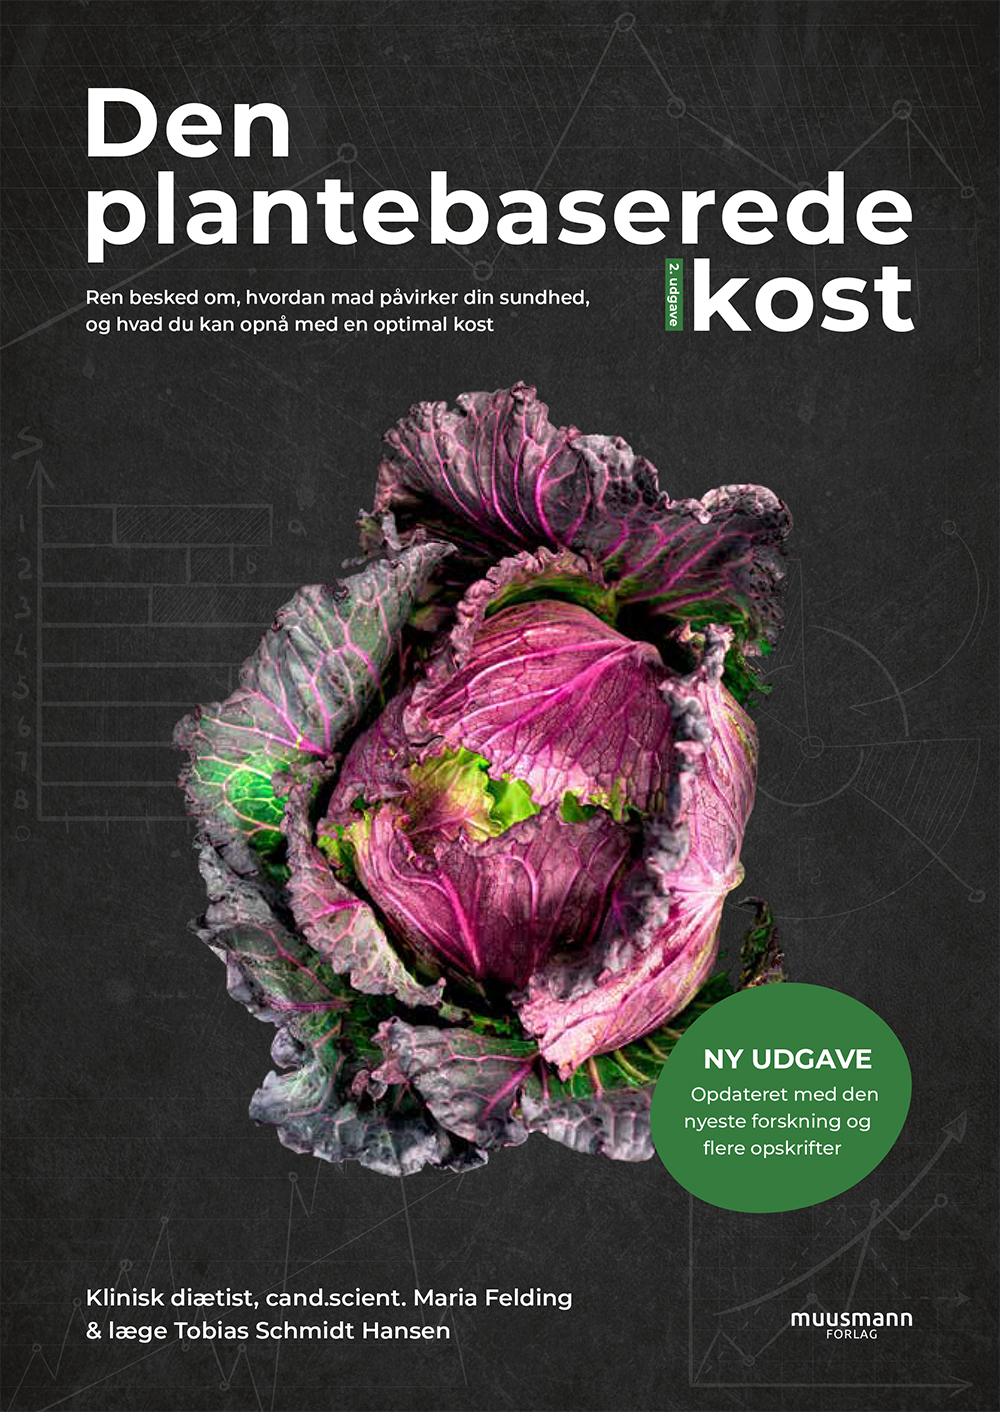 Den plantebaserede kost (Hardcover, Danish language, 2020, Muusmann Forlag)